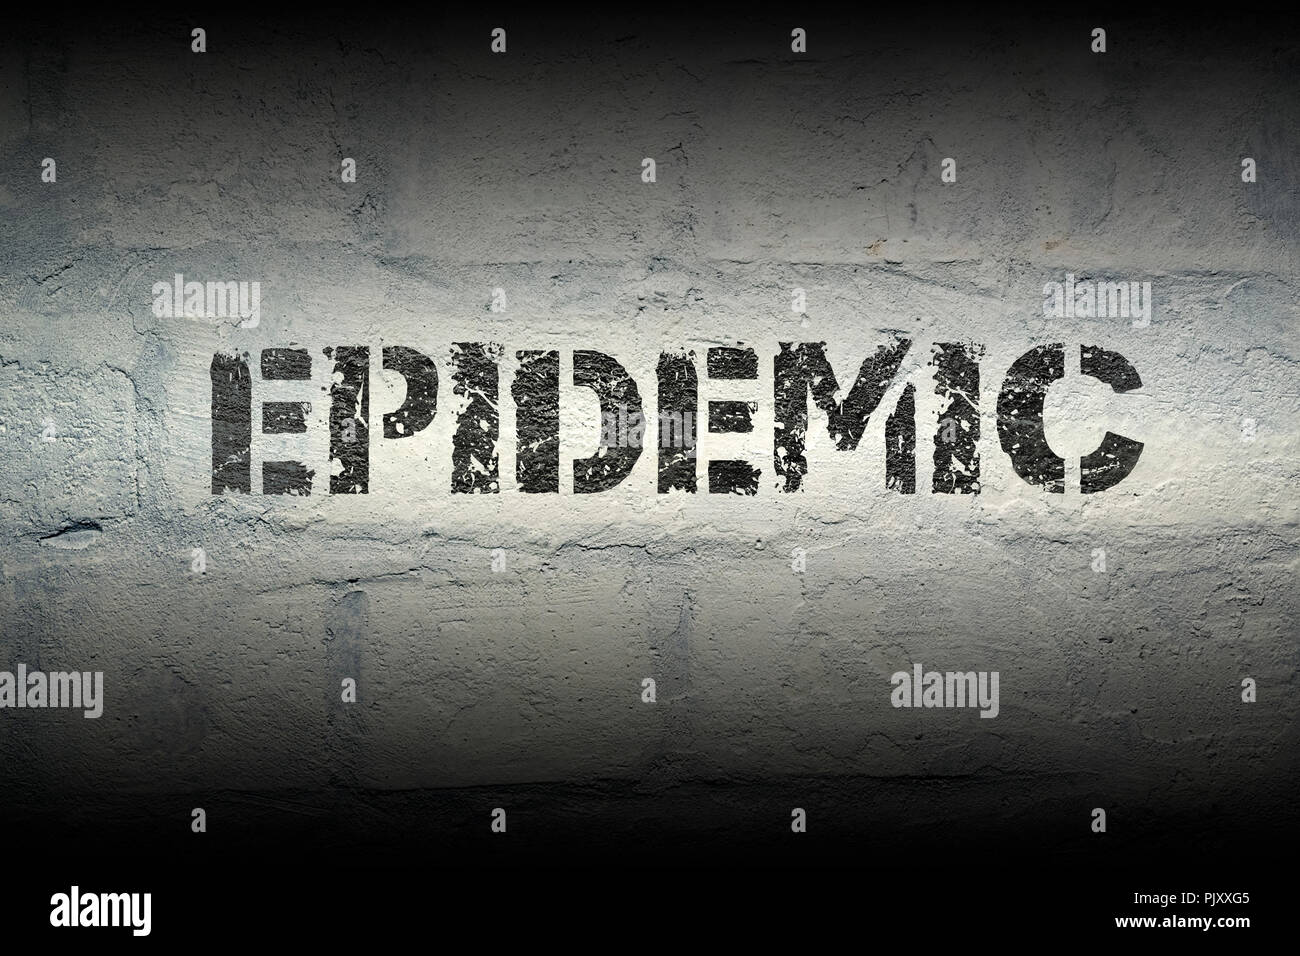 Epidemie Wort stencil Print auf der grunge White Brick Wall Stockfoto